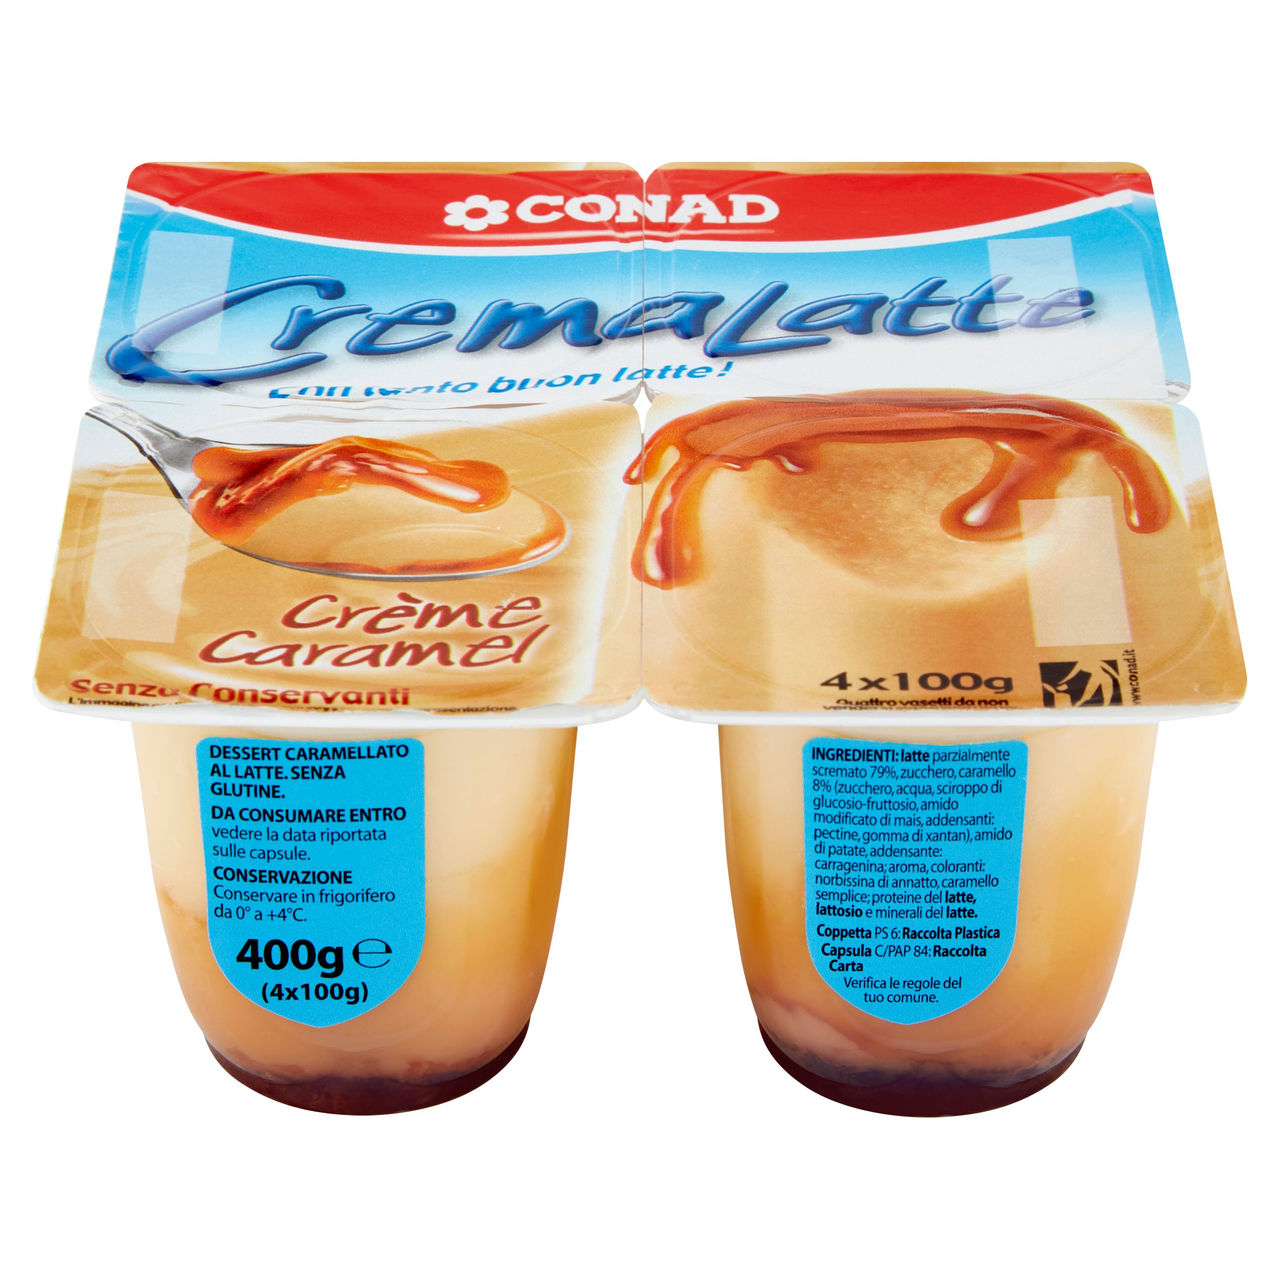 CremaLatte Crème Caramel 4 x 100 g Conad